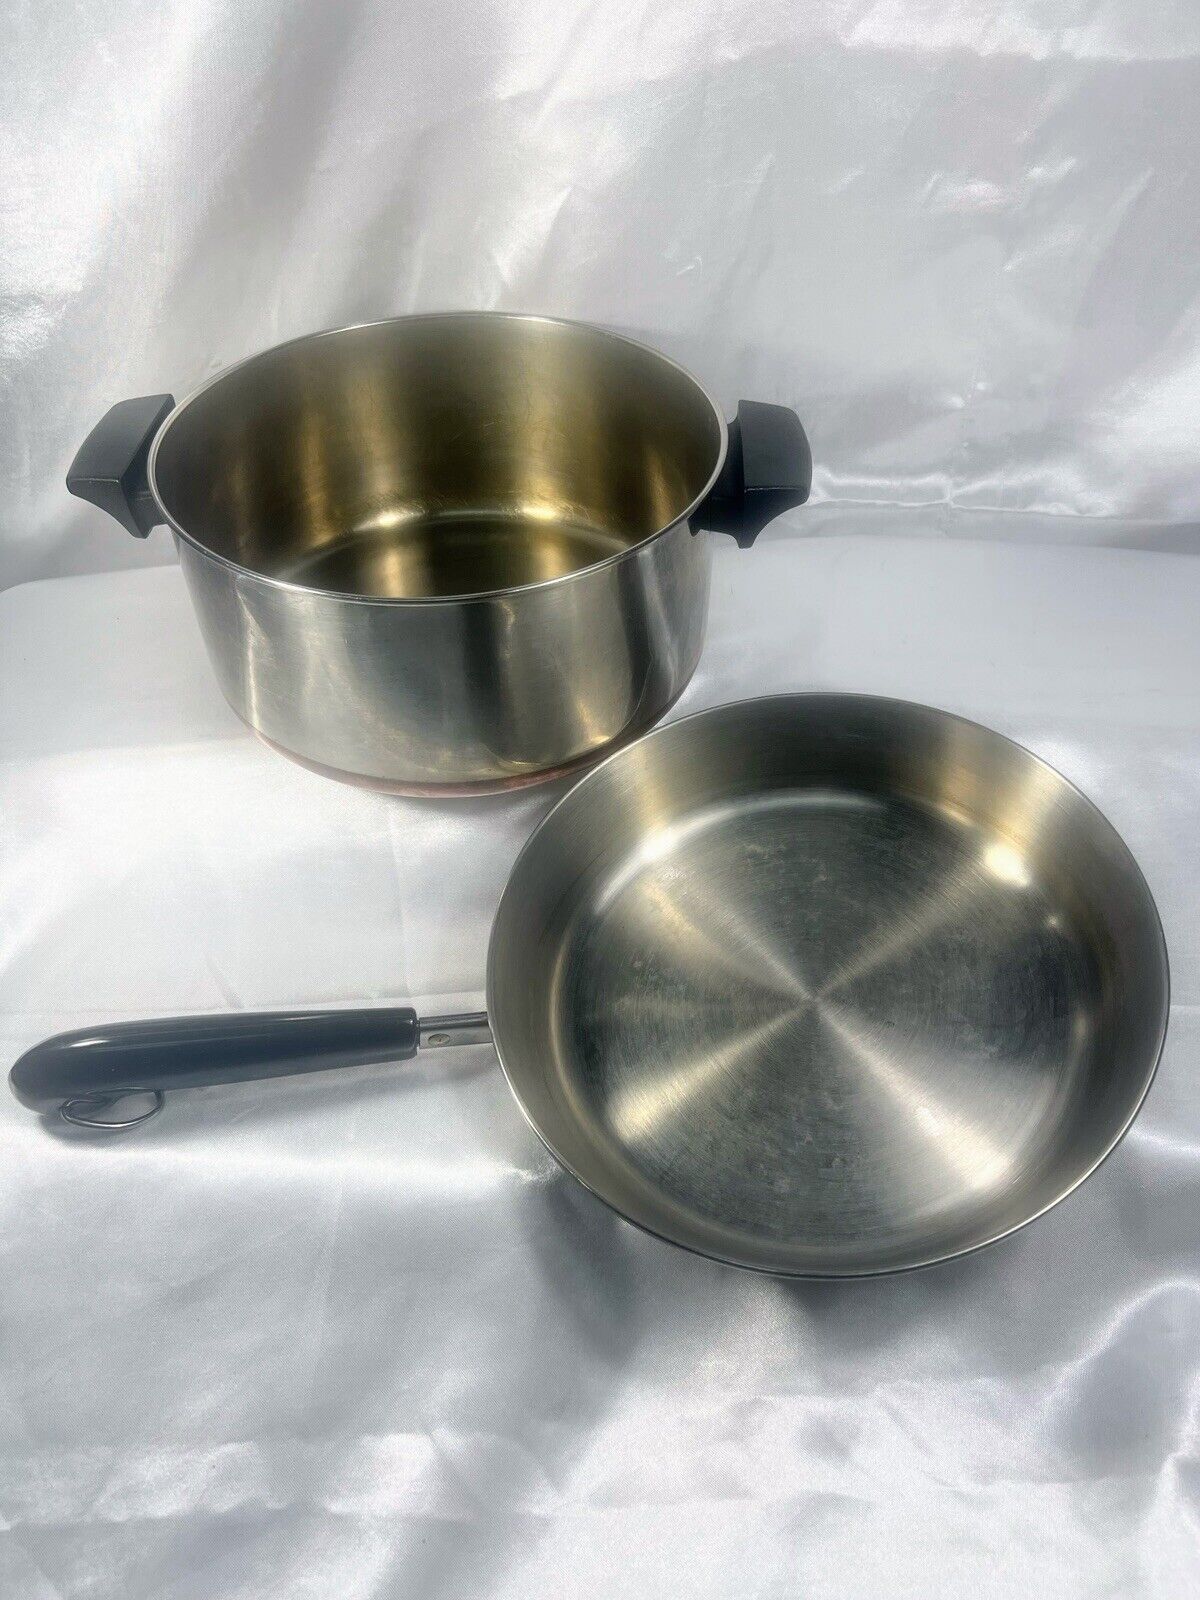 Vintage Revere Ware 1 1/2 qt pot Copper Bottom & 9” skillet pan set Frying